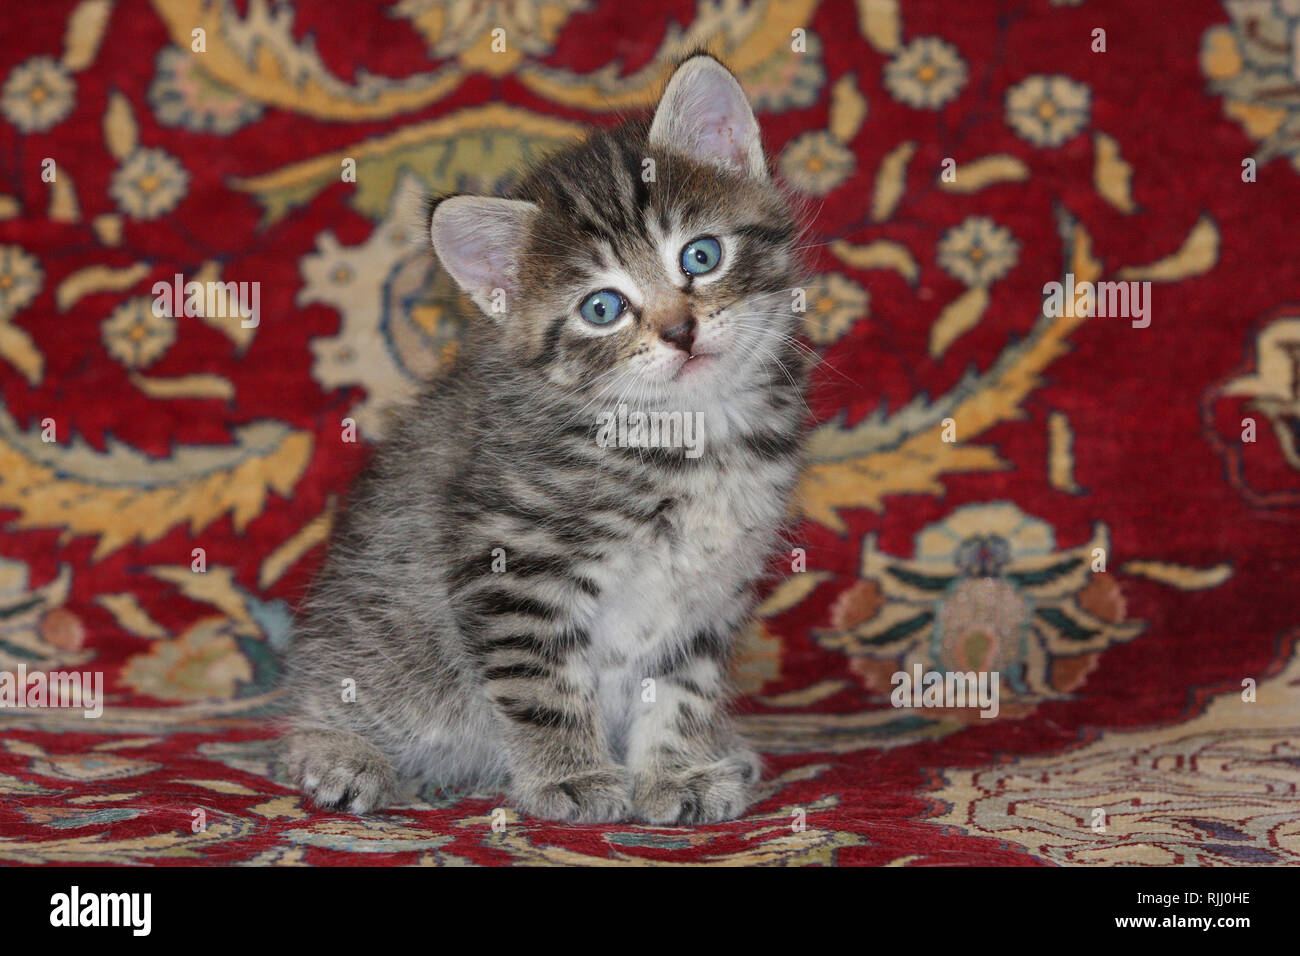 Gato doméstico. Gatito sentado sobre una alfombra. Alemania Foto de stock